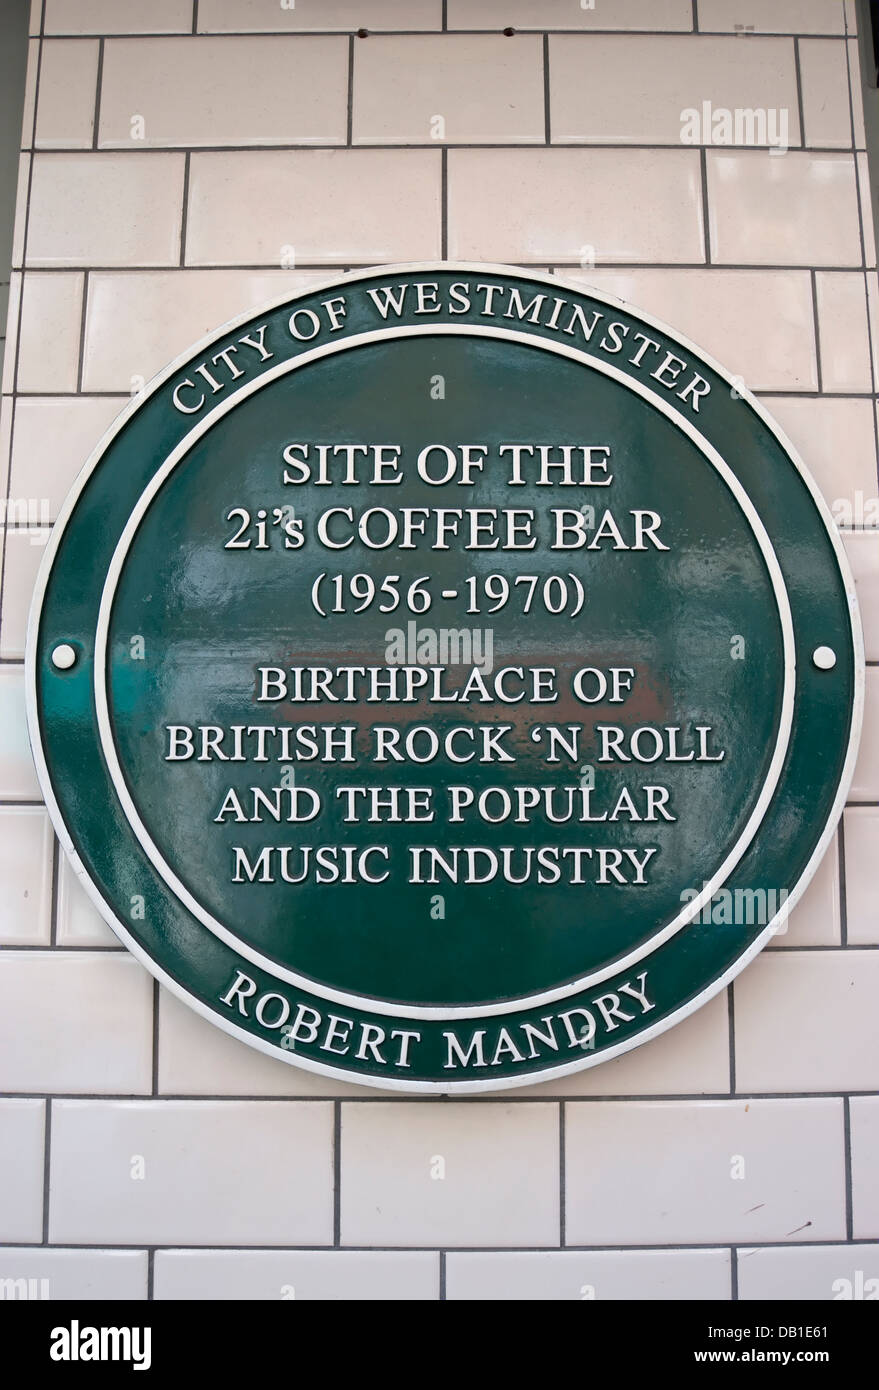 Consiglio di westminster green lapide segna il sito del 2i caffè del bar, descritta come il luogo di nascita del british rock and roll Foto Stock